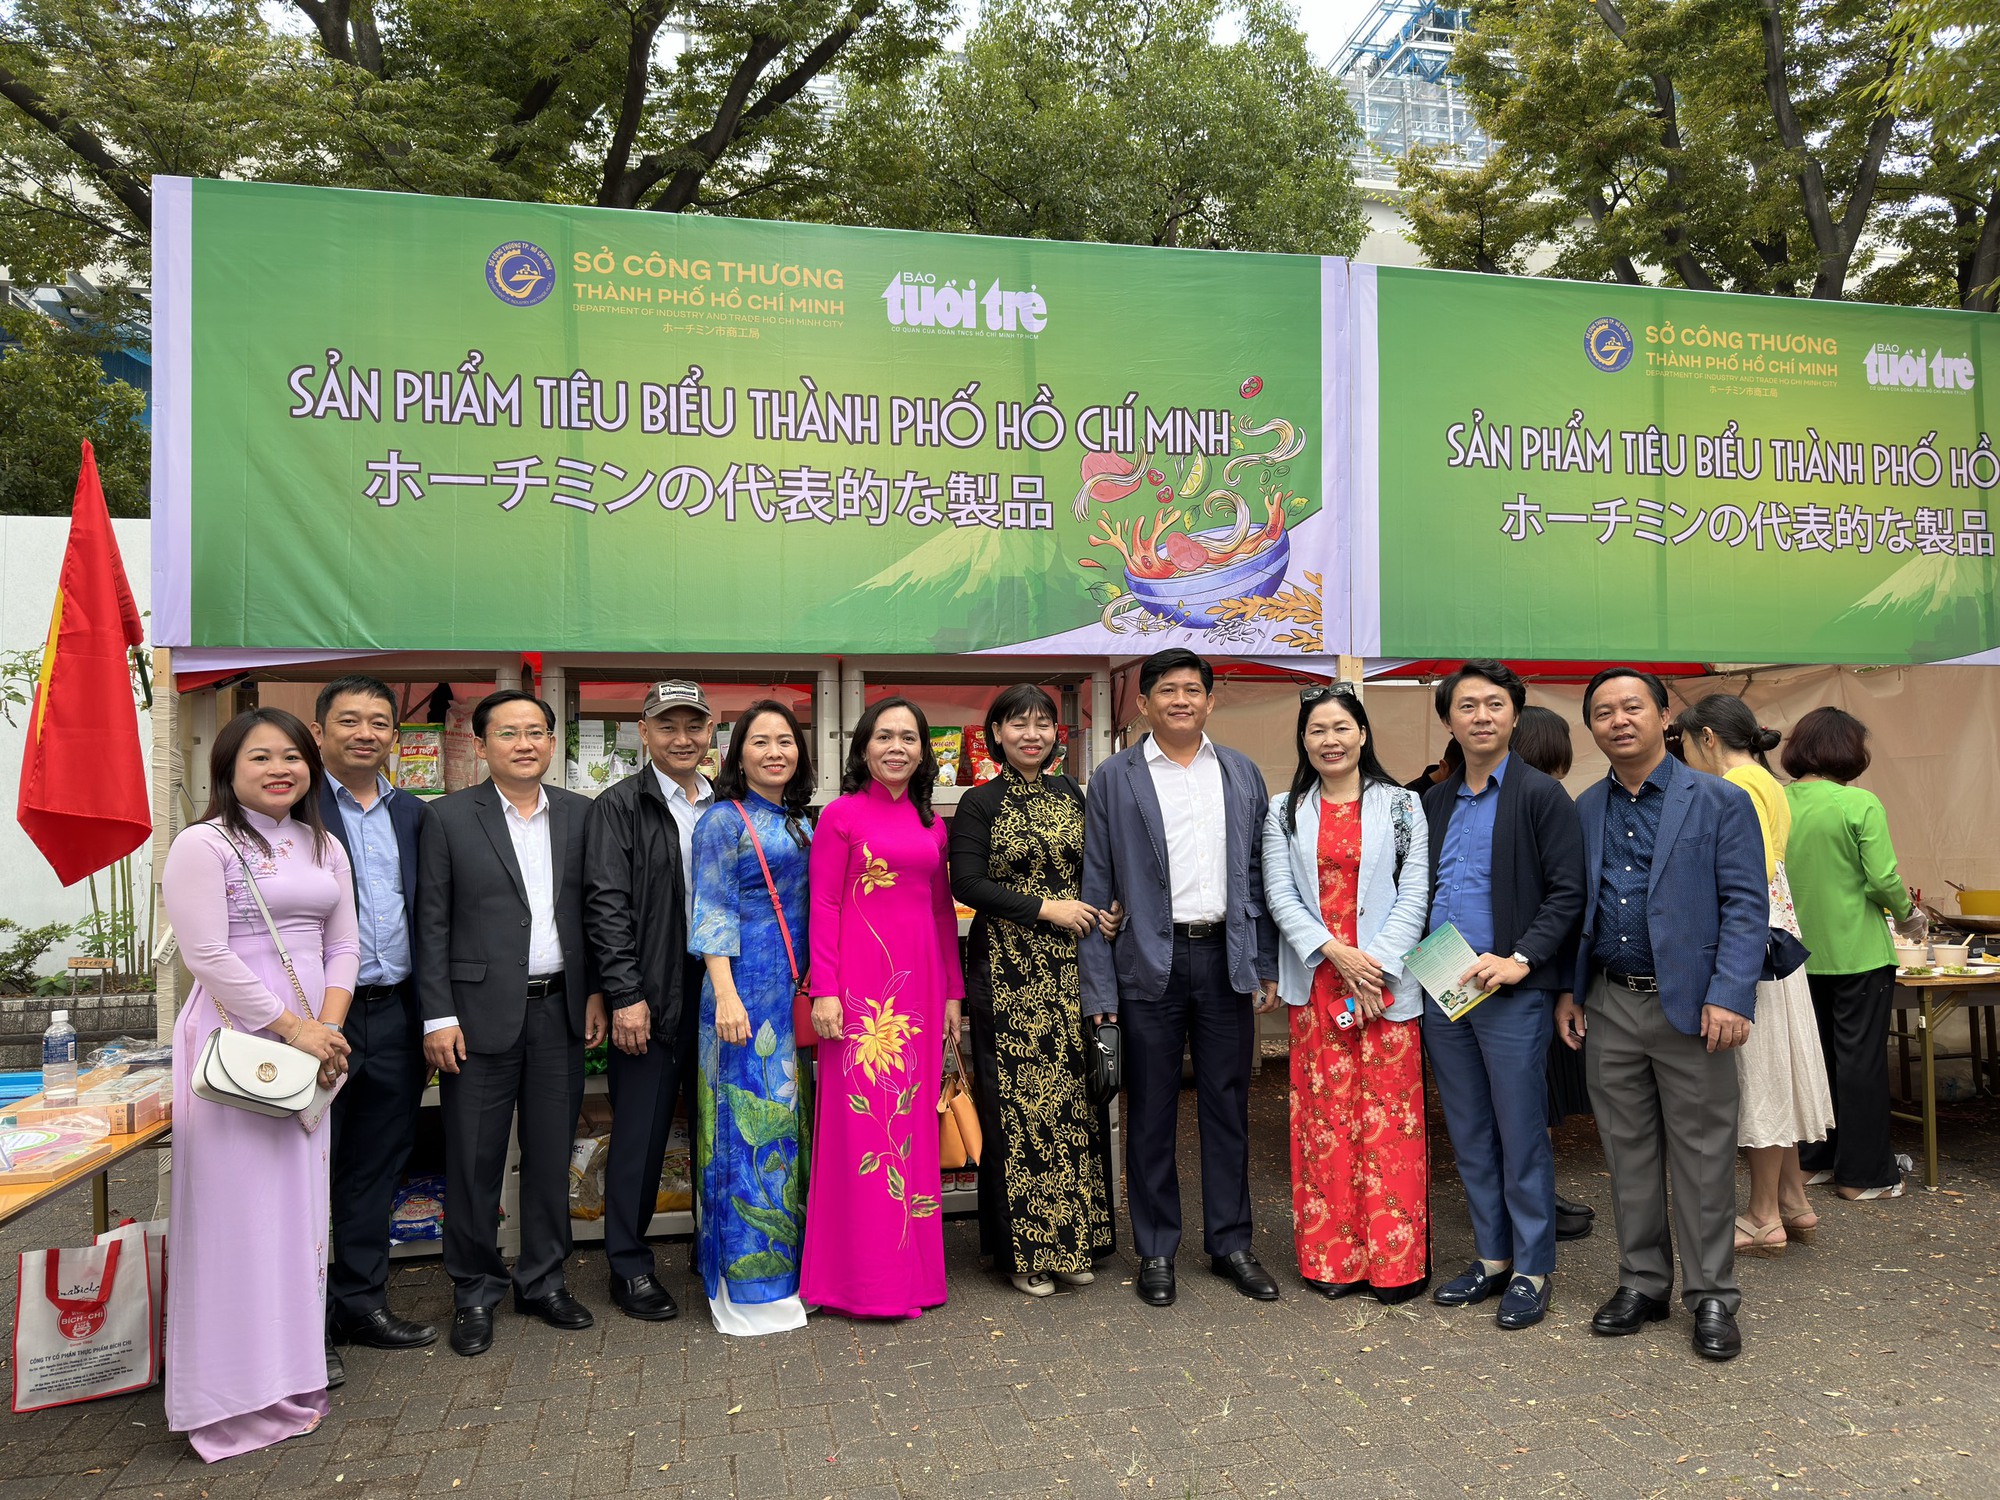 Đoàn cán bộ TP.HCM tham dự Việt Nam Phở Festival tại Nhật Bản - Ảnh 1.